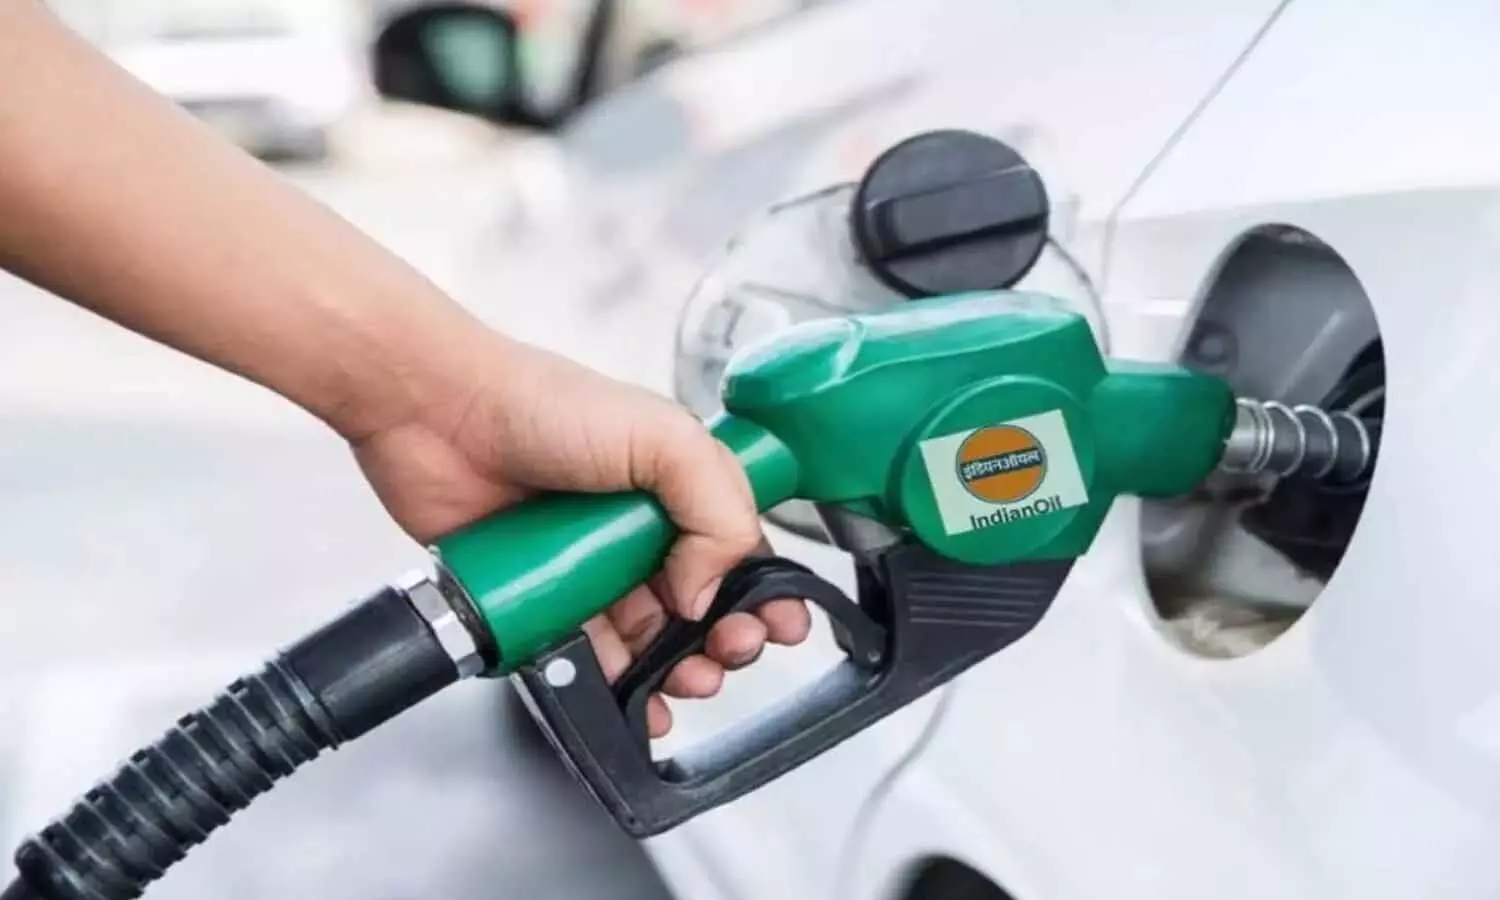 Petrol-Diesel Aaj ka Rate : सरकारी तेल कंपनियों ने आज भी बदली पेट्रोल-डीजल की दरें, जानें आपके शहर में क्या है भाव